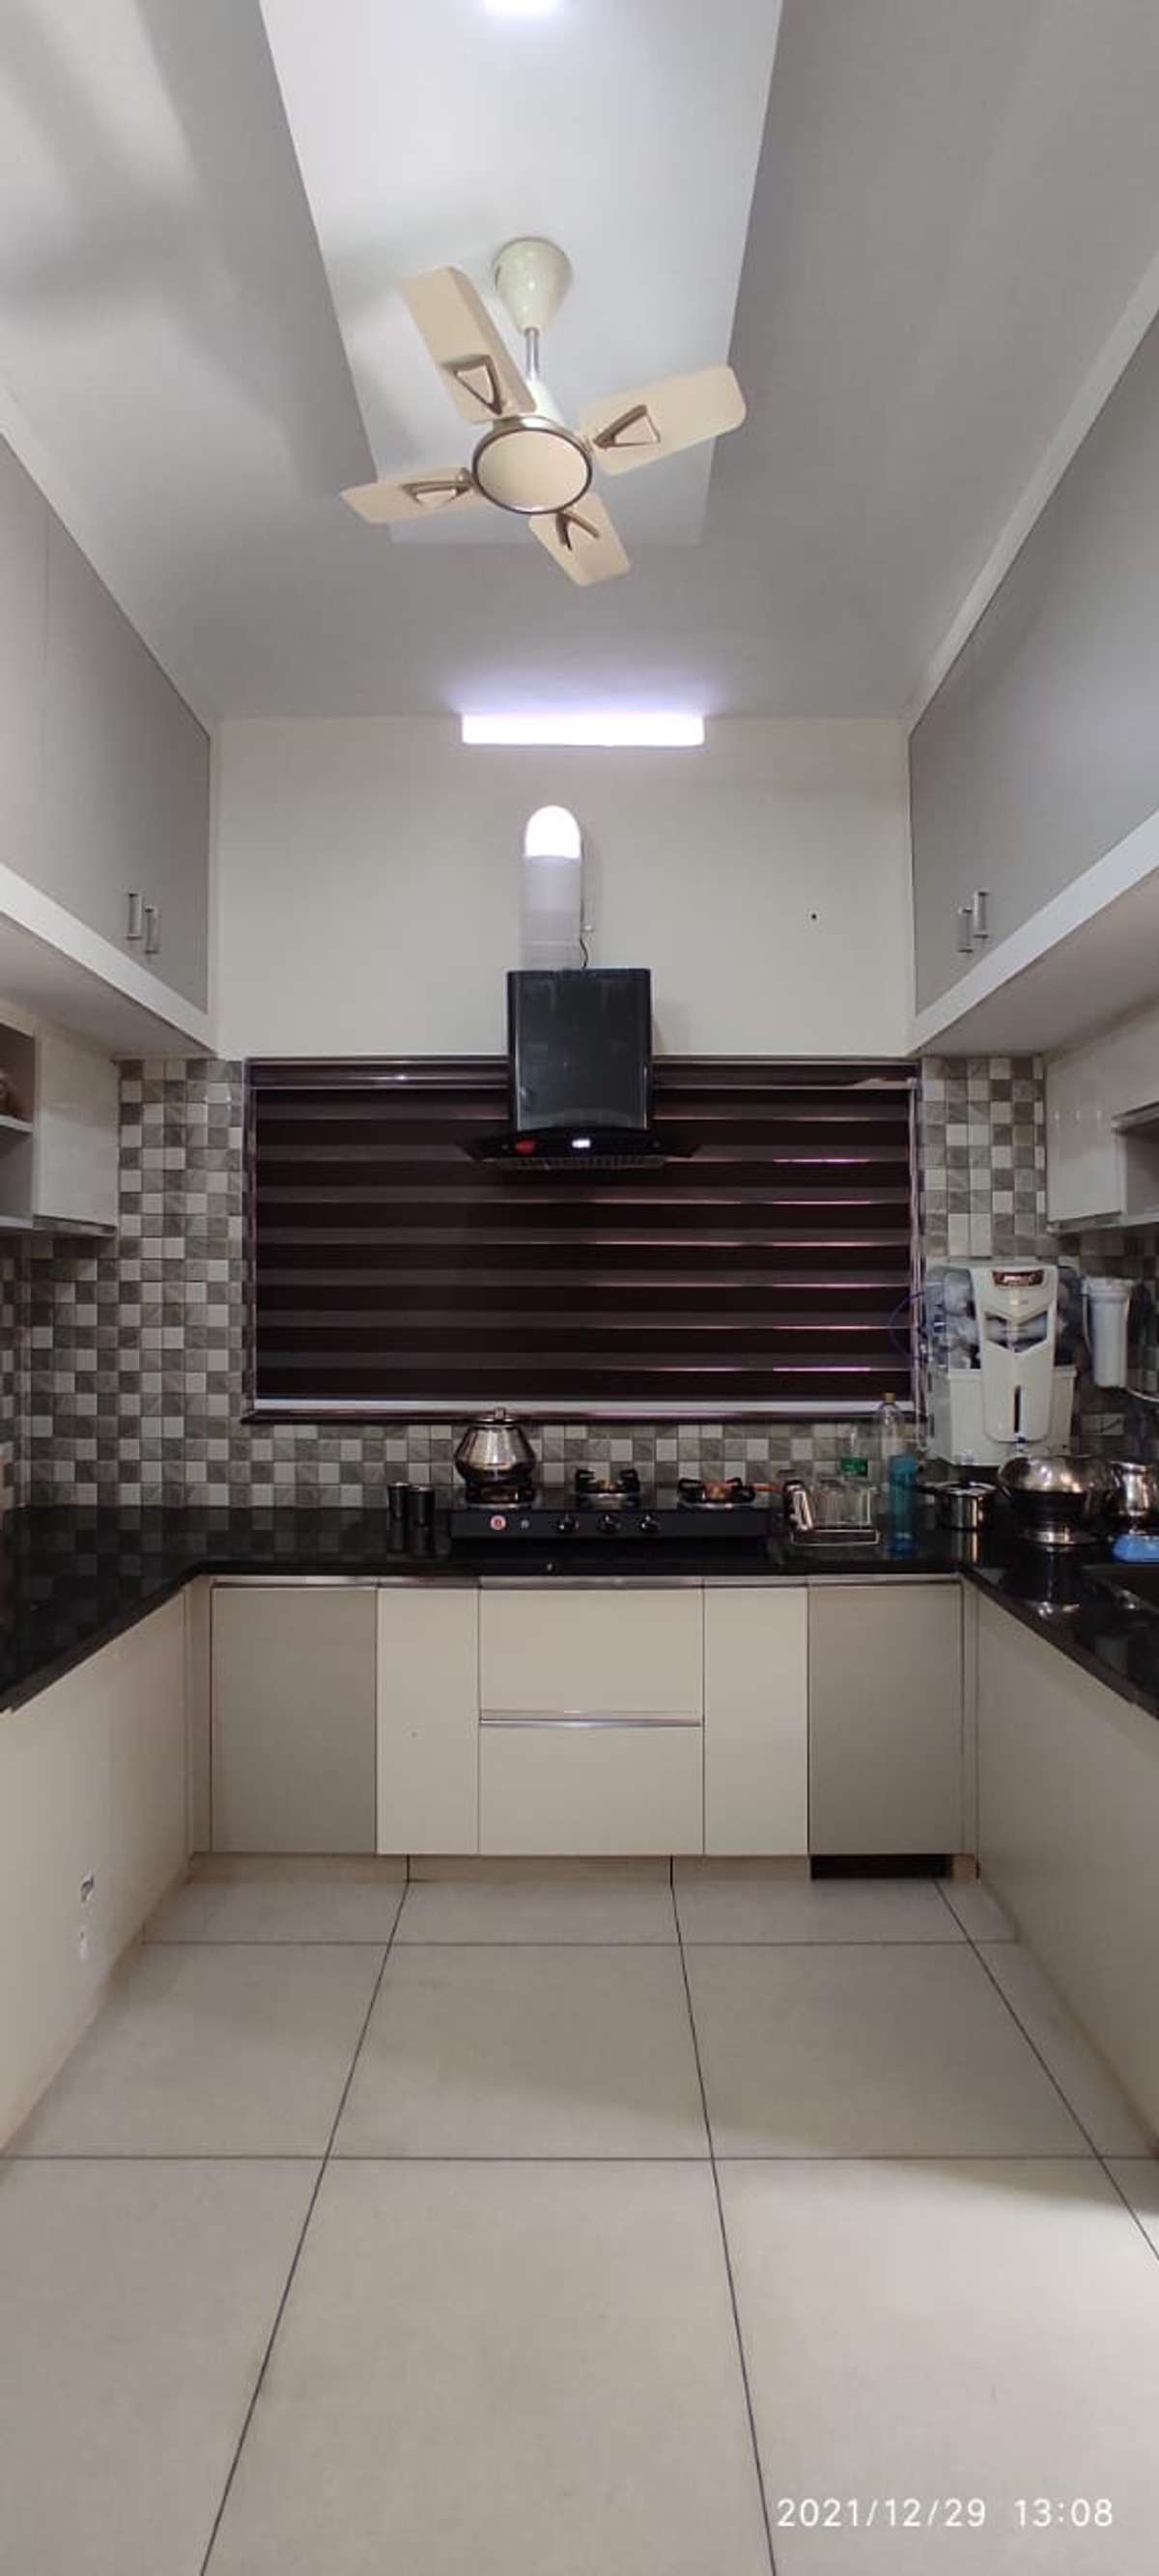 Kitchen, Storage Designs by Architect Arrant Architects, Thrissur | Kolo